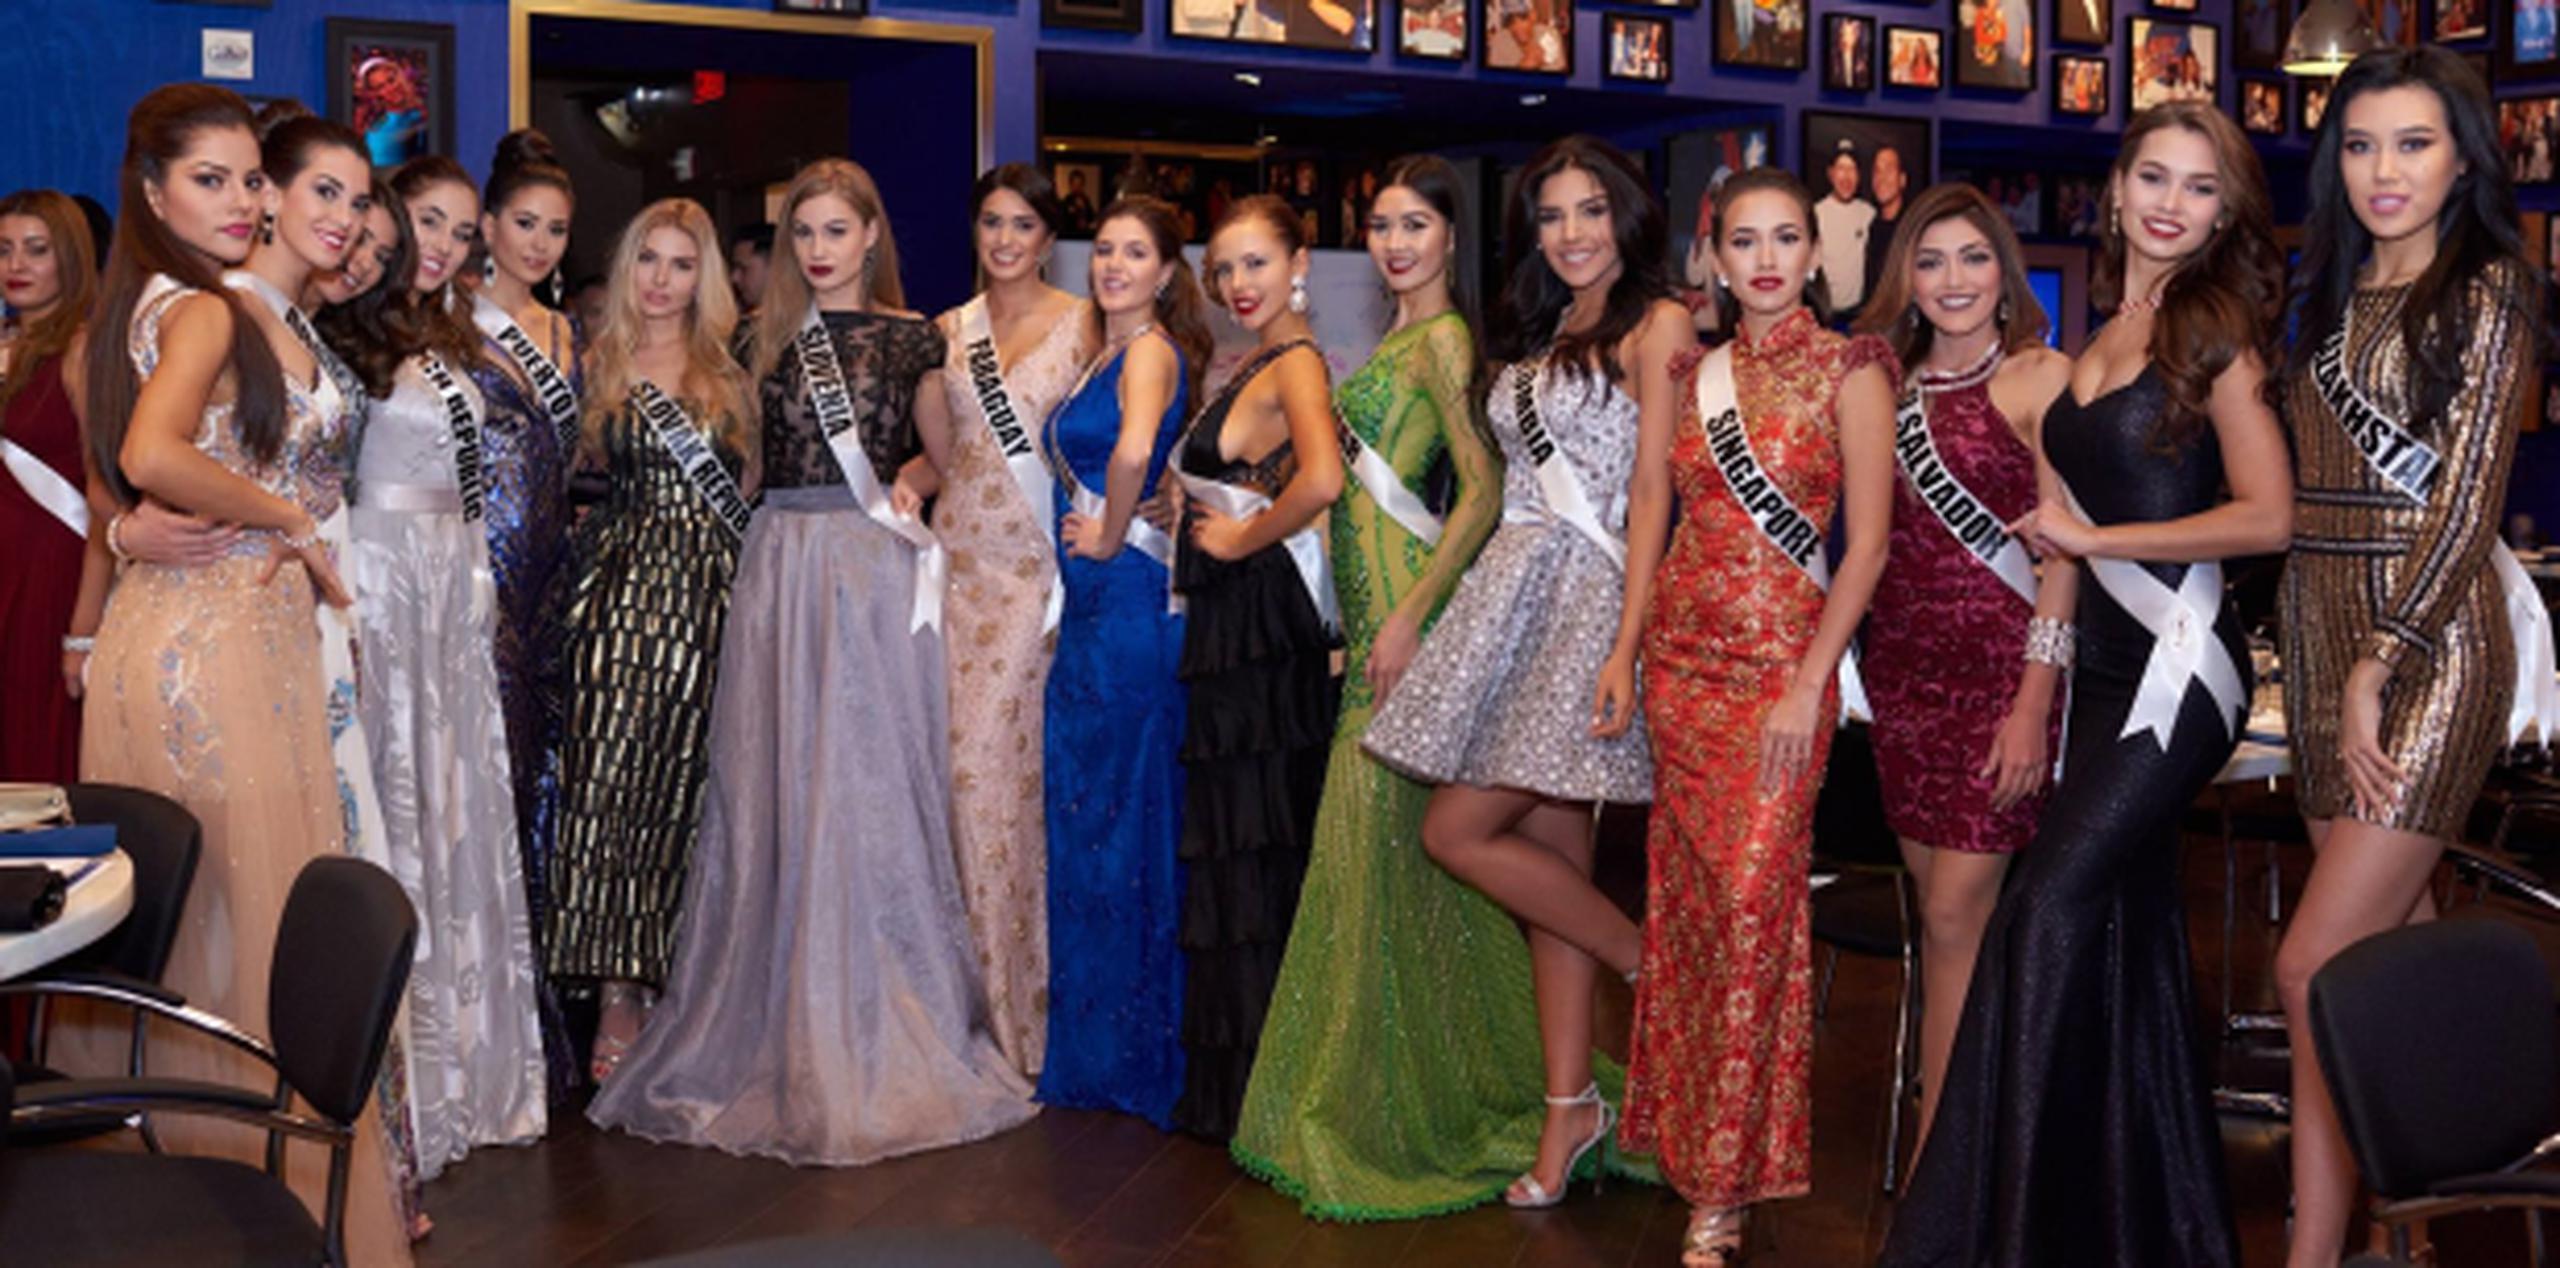 El concurso se llevará a cabo en Planet Hollywood Resort & Casino. (Facebook / Miss Universe)